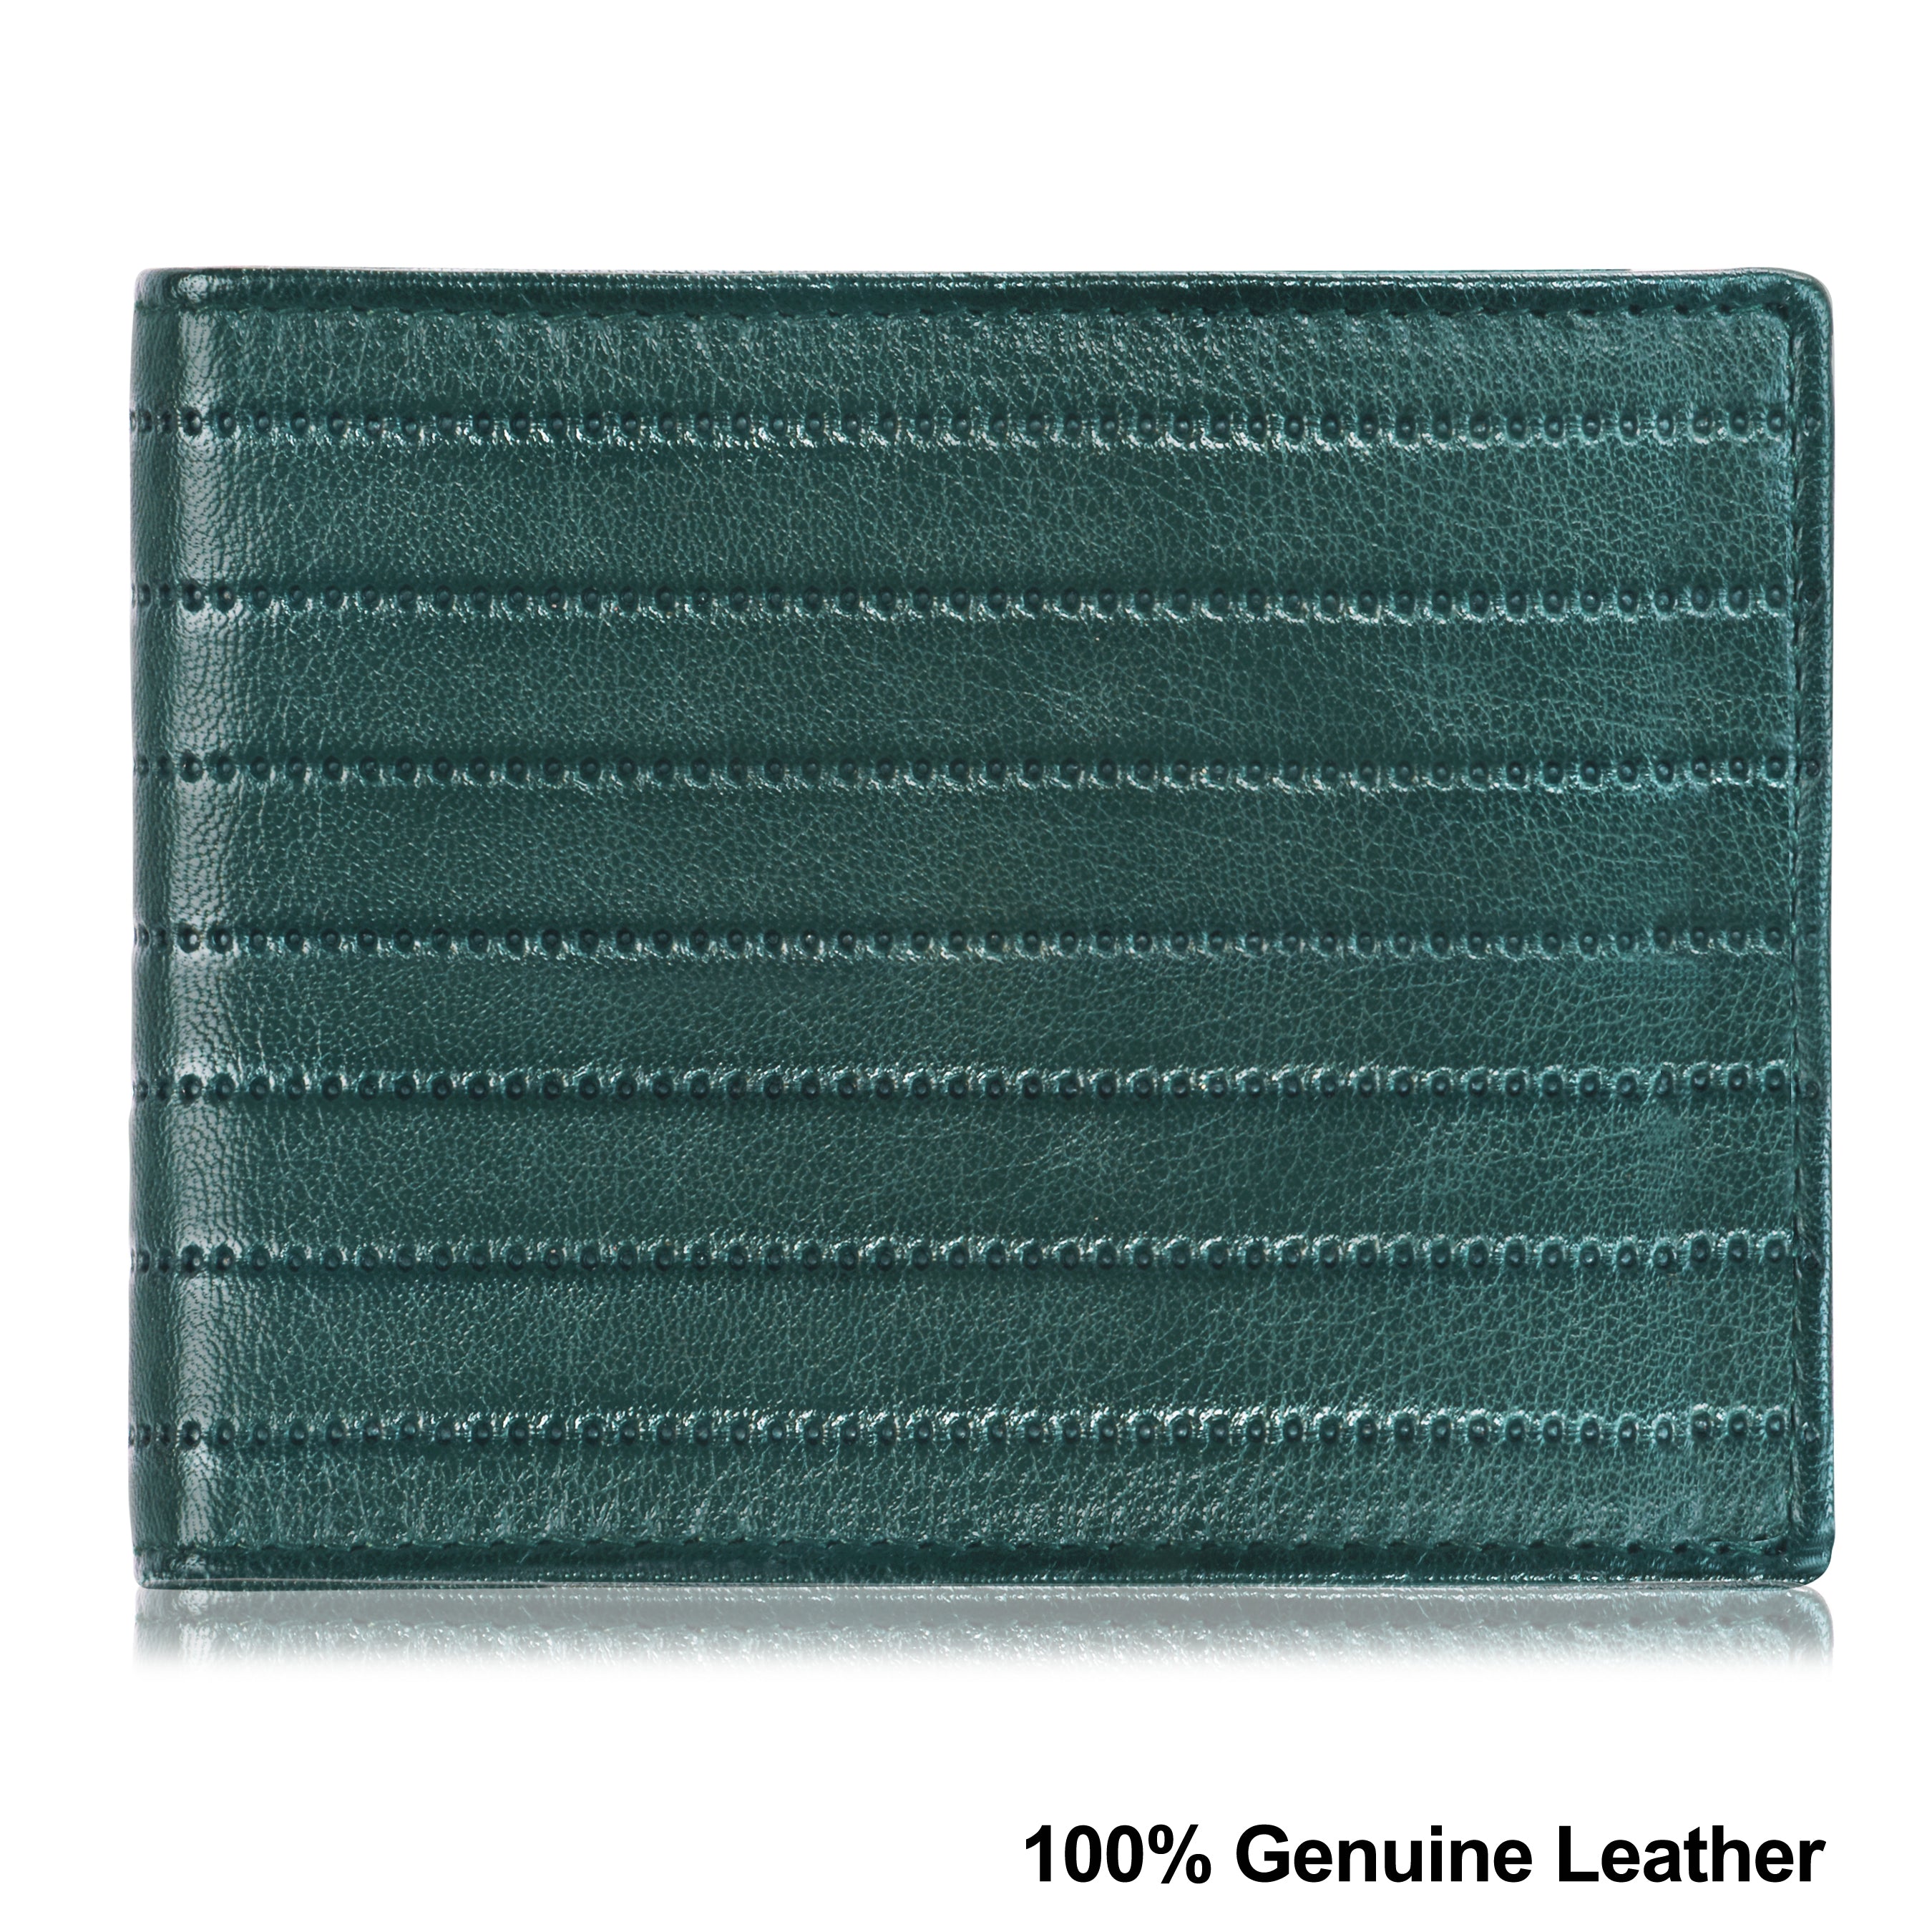 LORENZ Wallet & Belt Combo  (Green)